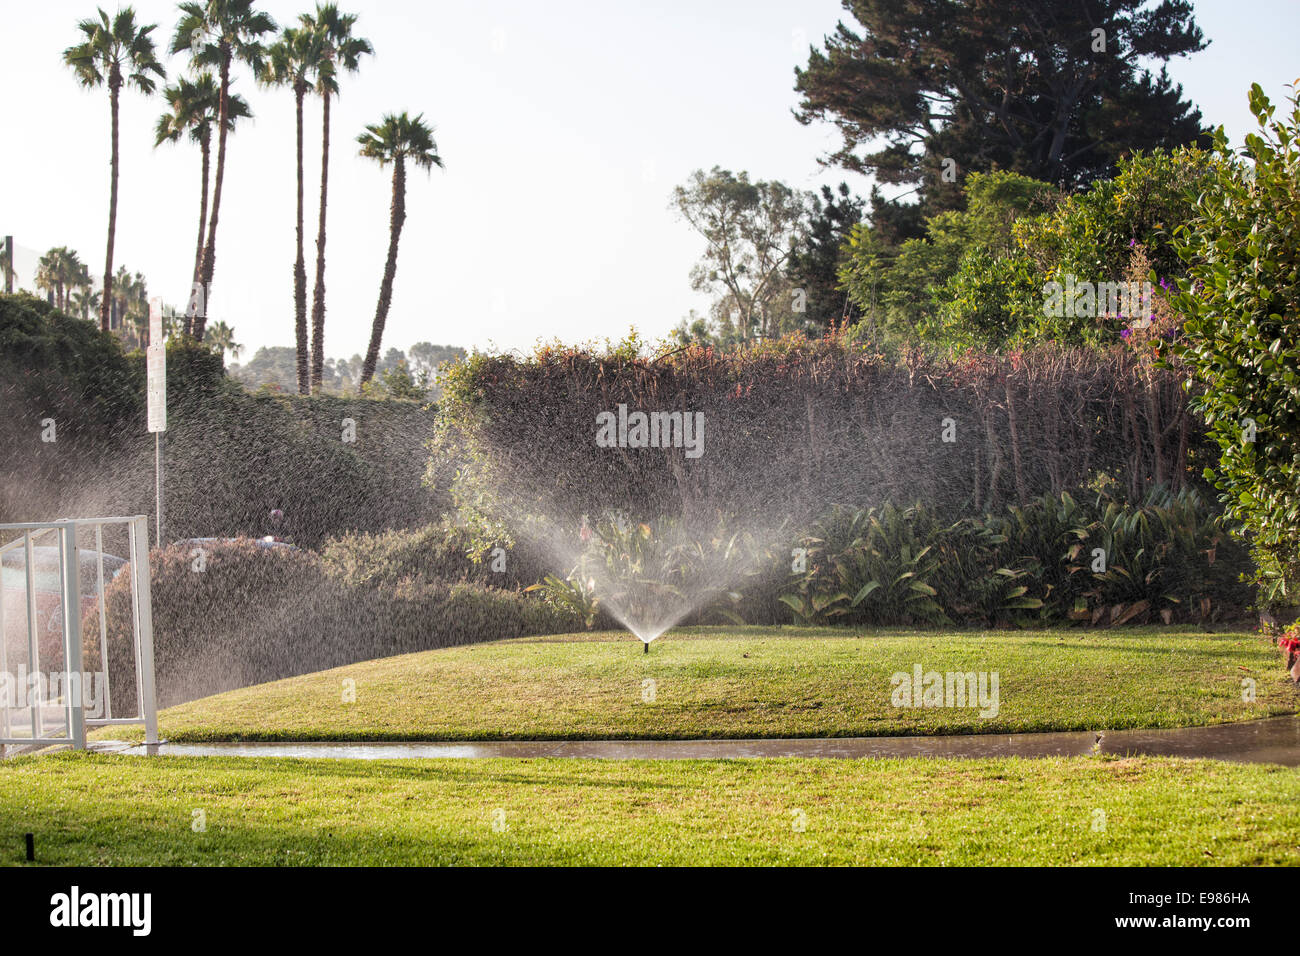 Les pelouses sont arrosées par des sprinkleurs au cours de la grave sécheresse de l'été 2014. Cheviot Hills, Los Angeles, Californie, USA Banque D'Images